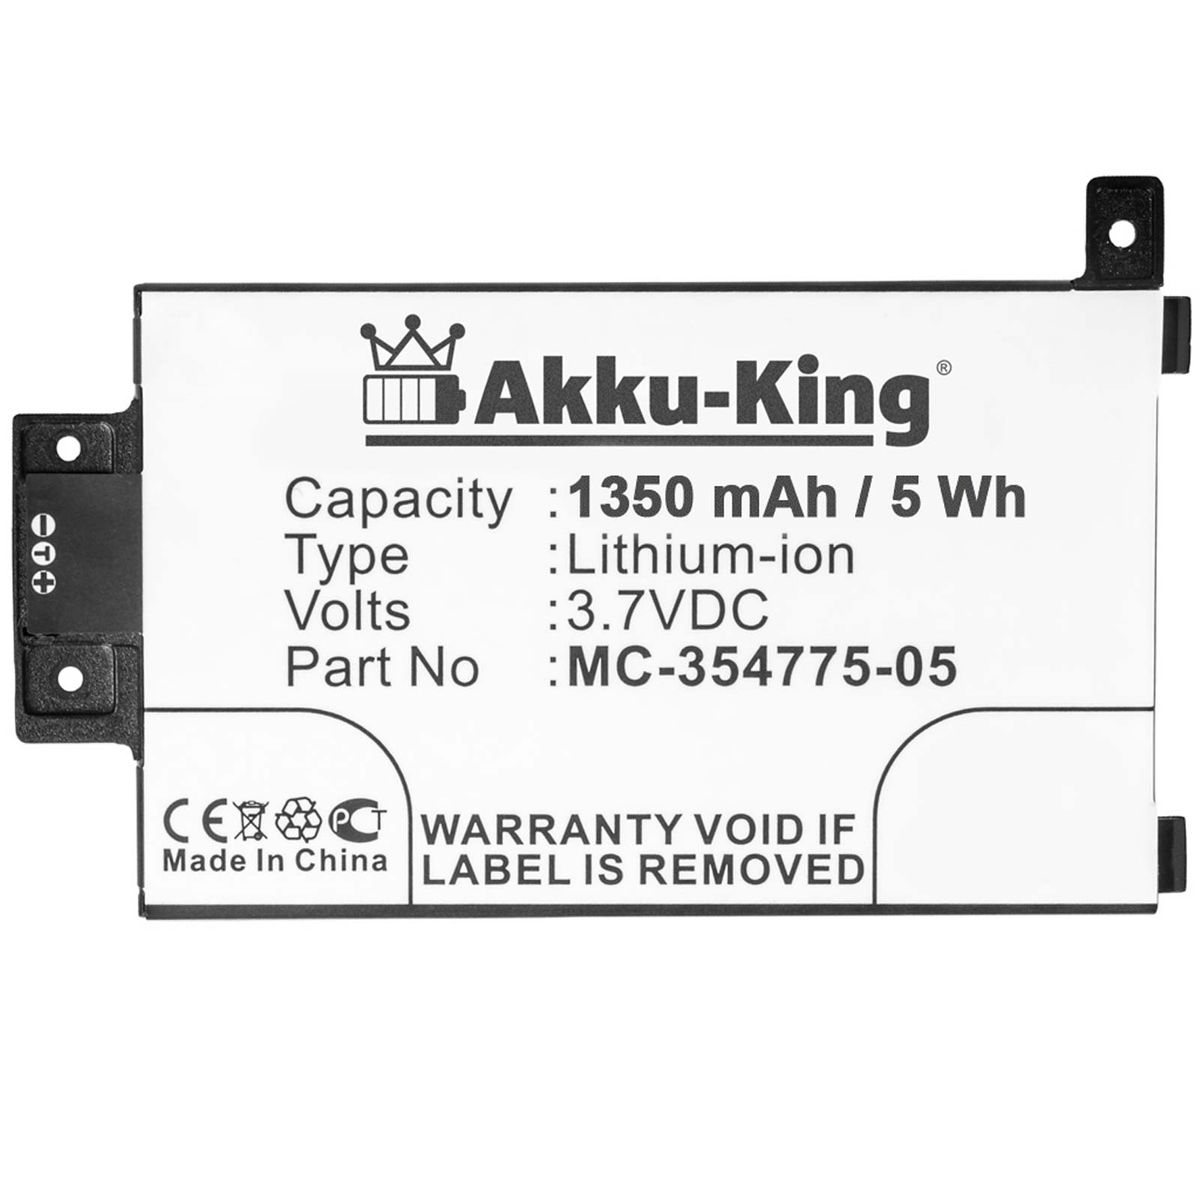 AKKU-KING Akku MC-354775-05 Amazon 3.7 mit kompatibel Li-Ion 1350mAh Geräte-Akku, Volt